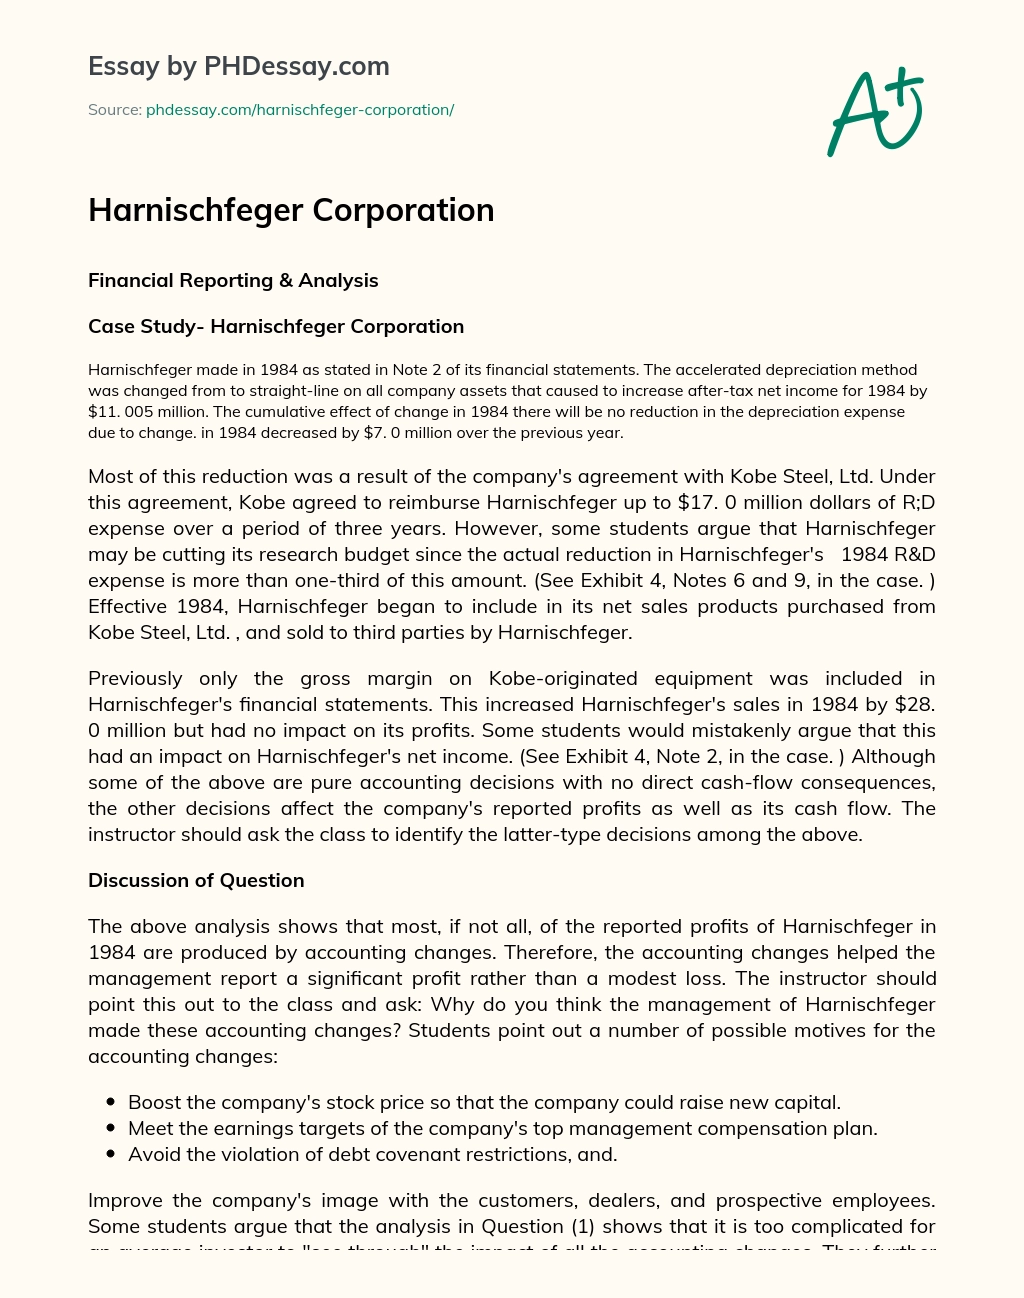 Harnischfeger Corporation essay